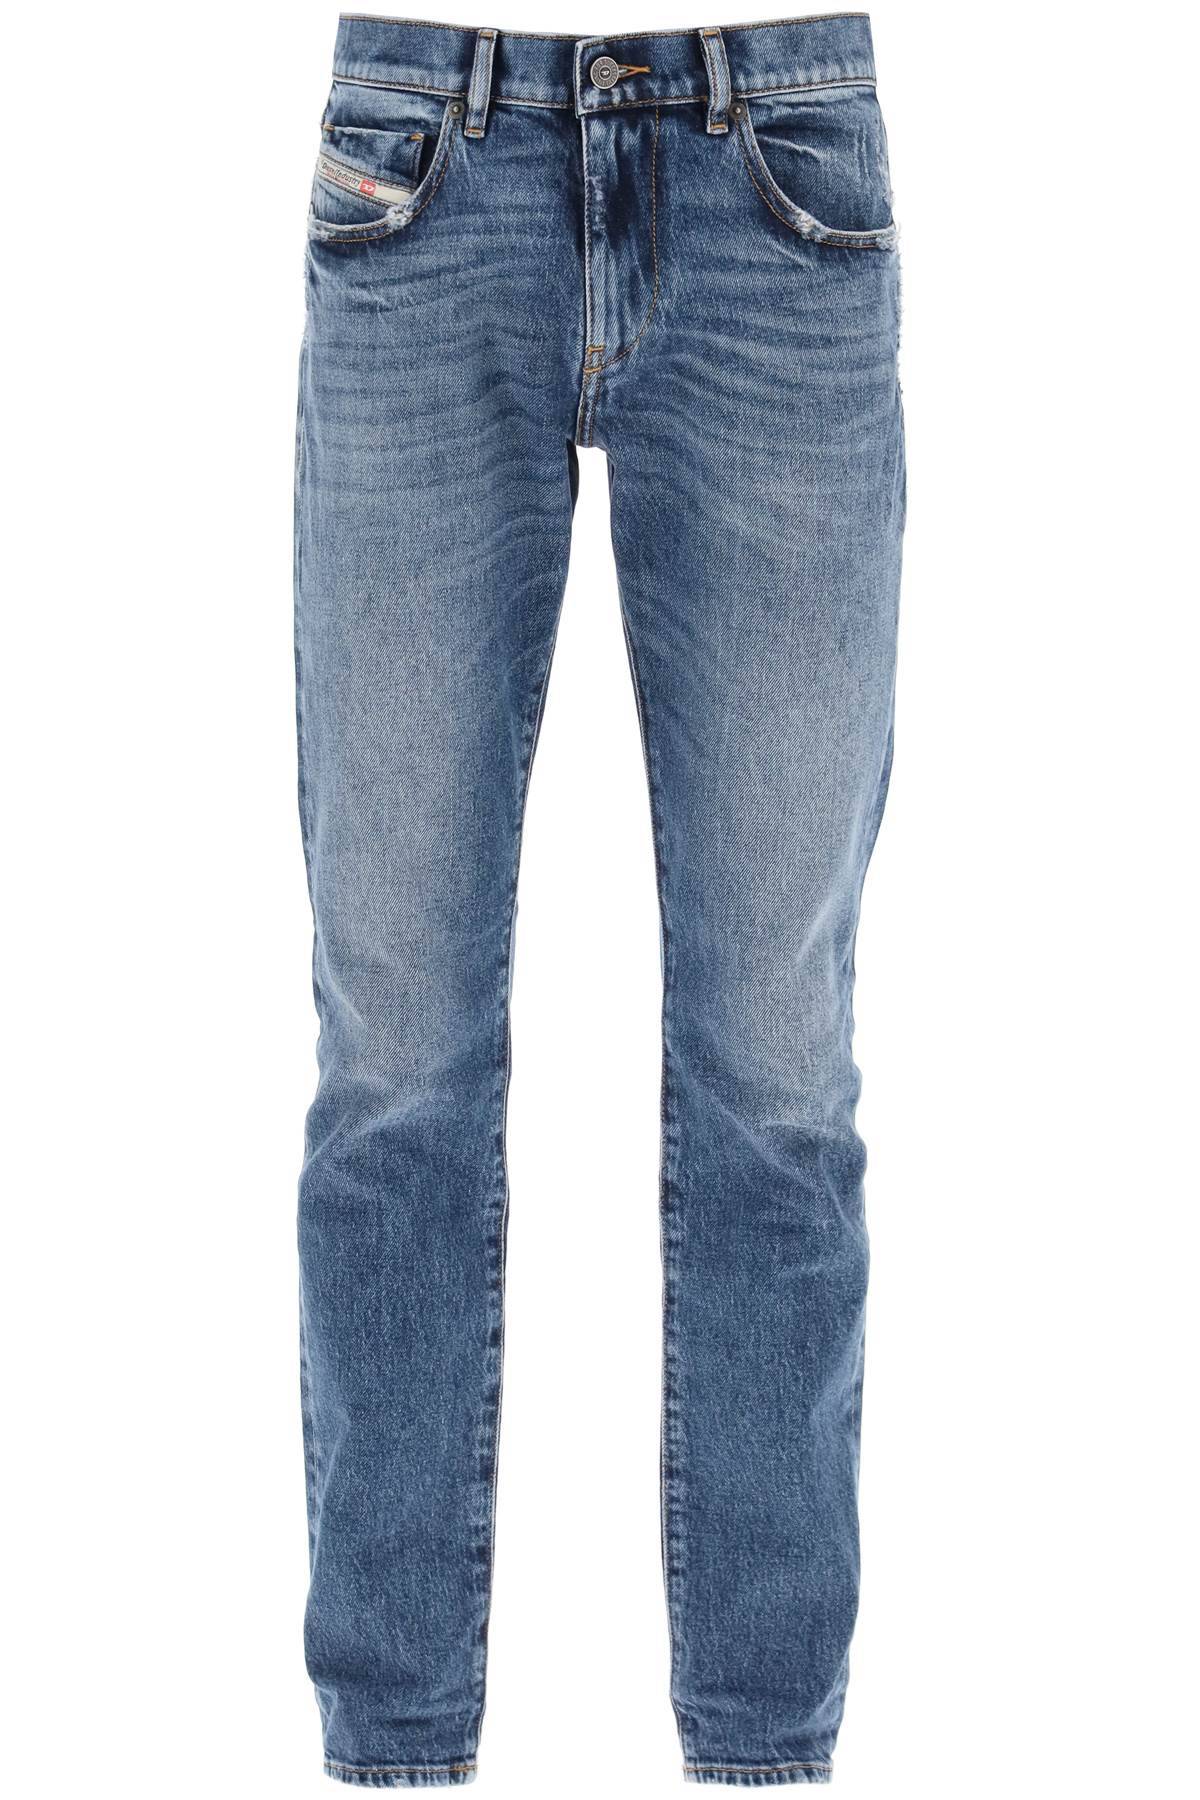 Diesel DIESEL 2019 d-strukt slim fit jeans